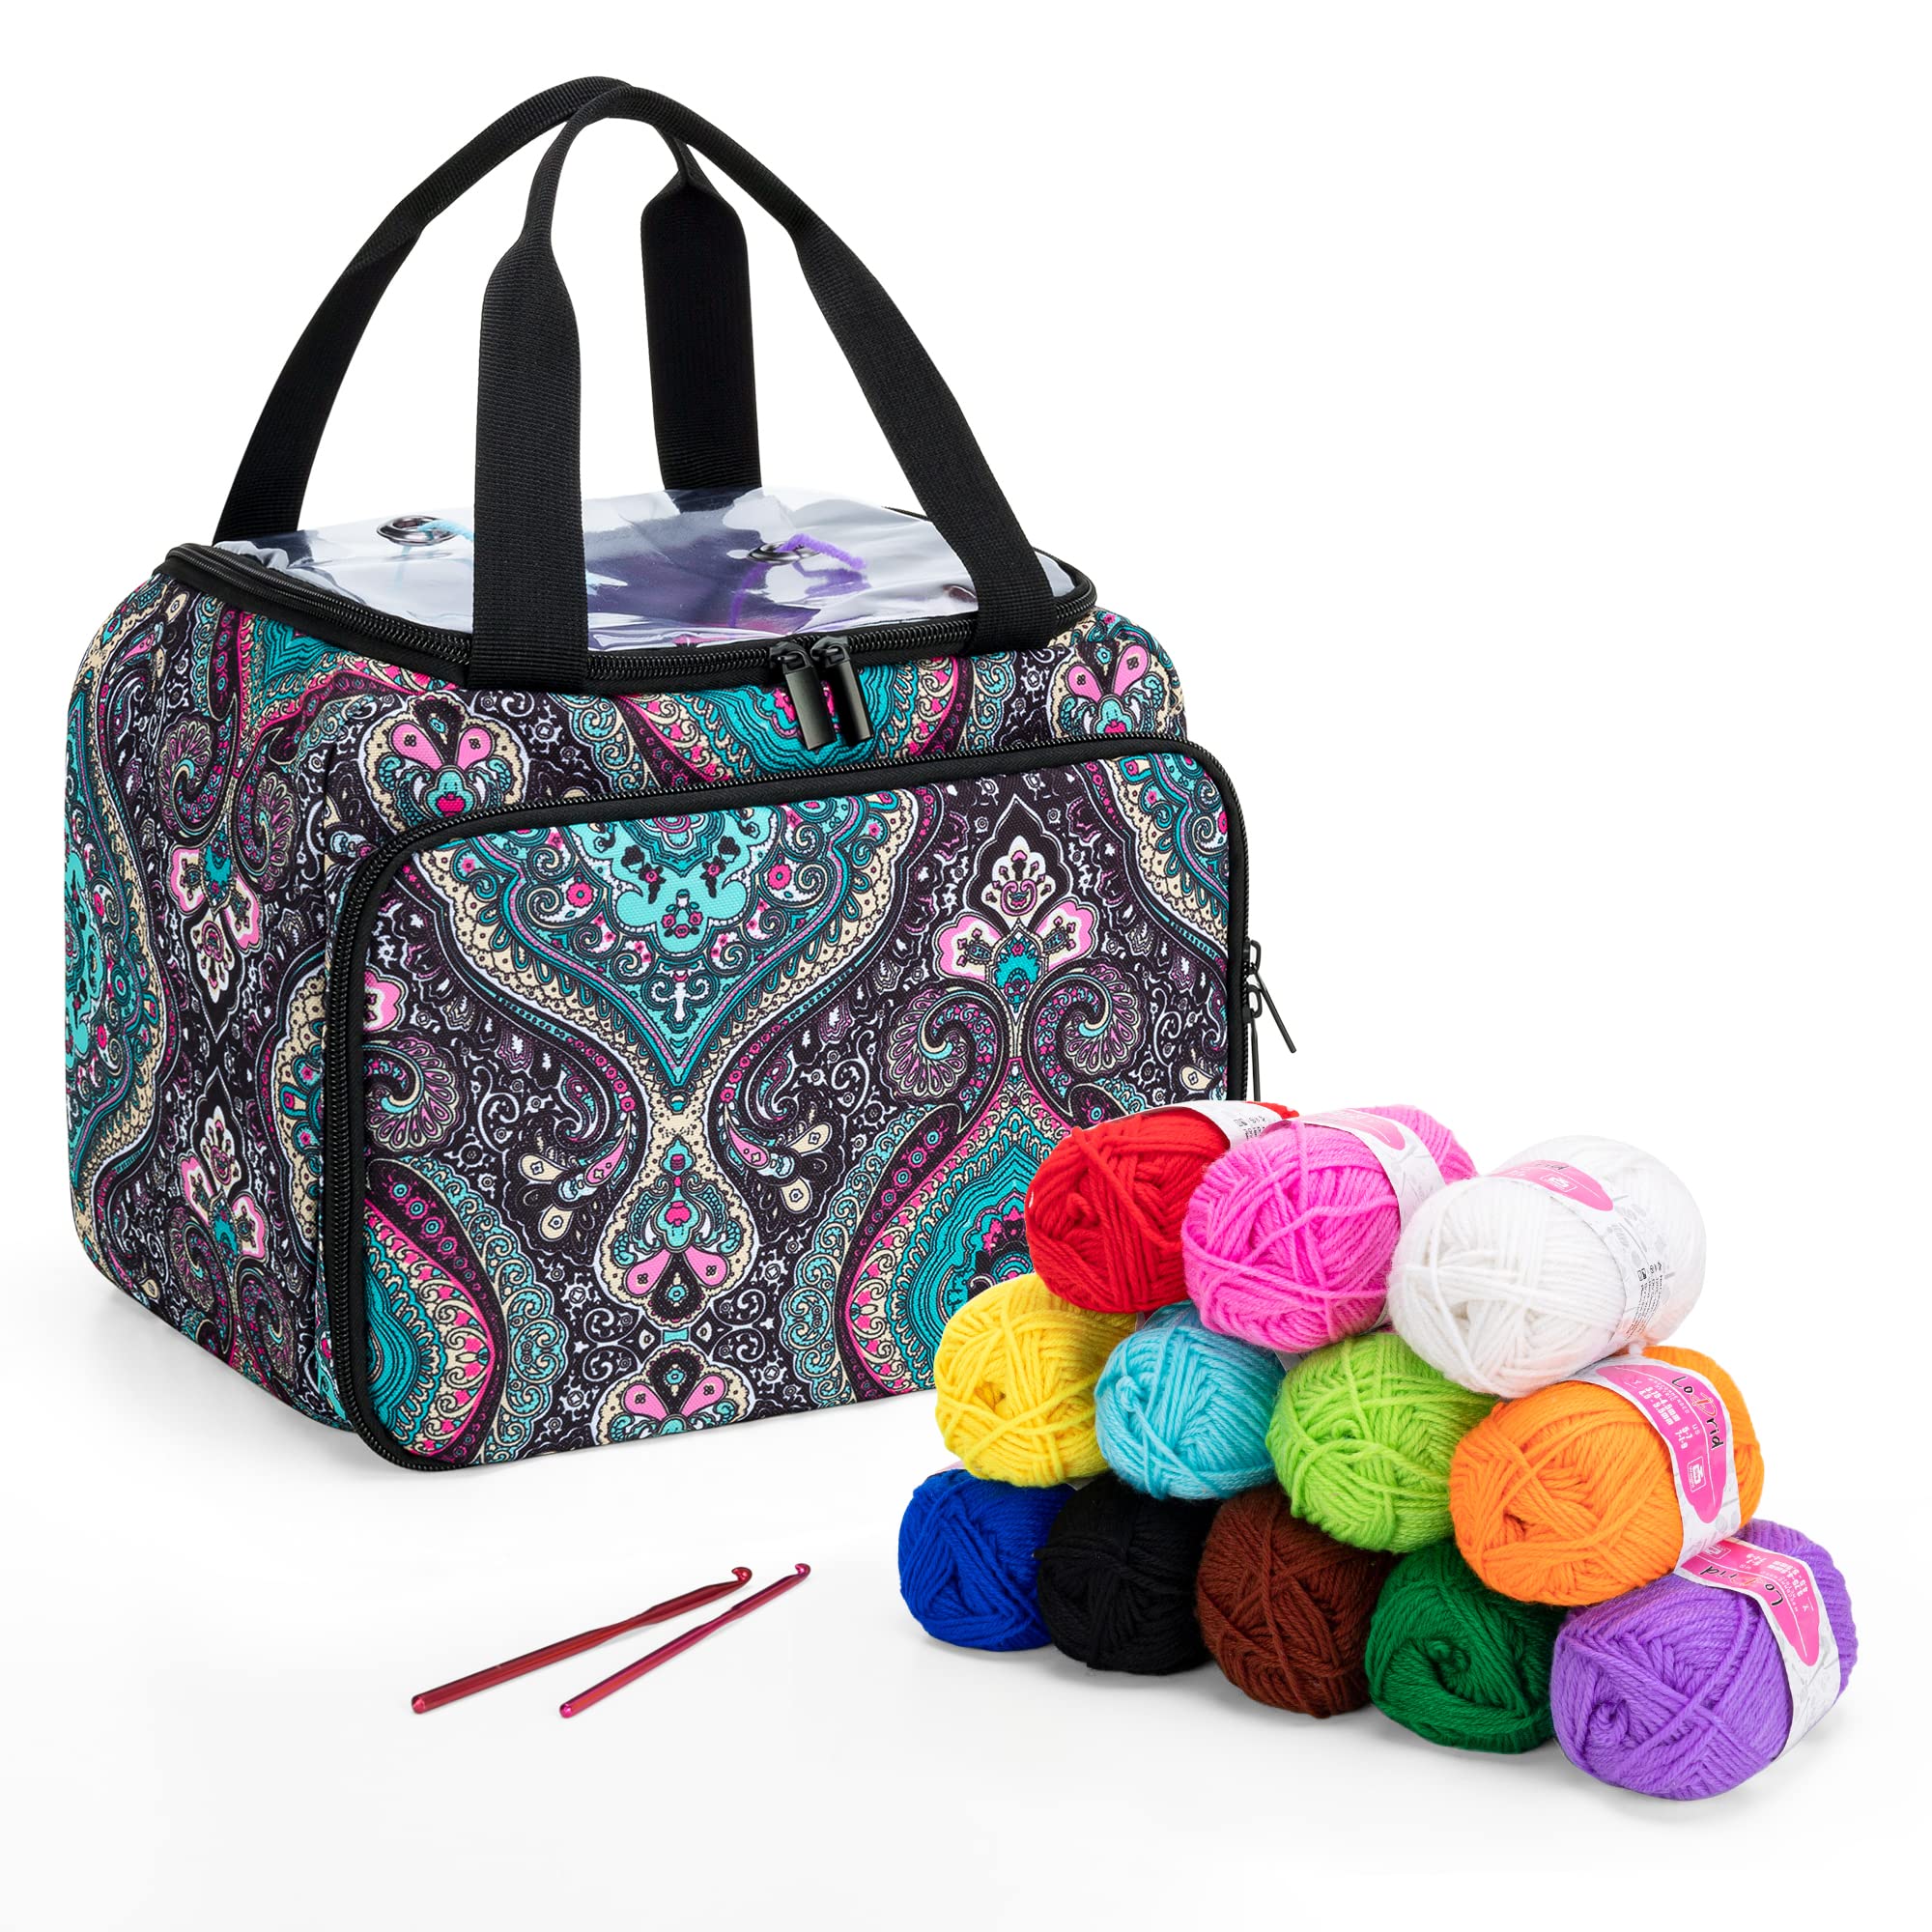 Knitting Kit for Beginners Adults & Kids, Knitting Starter Kit